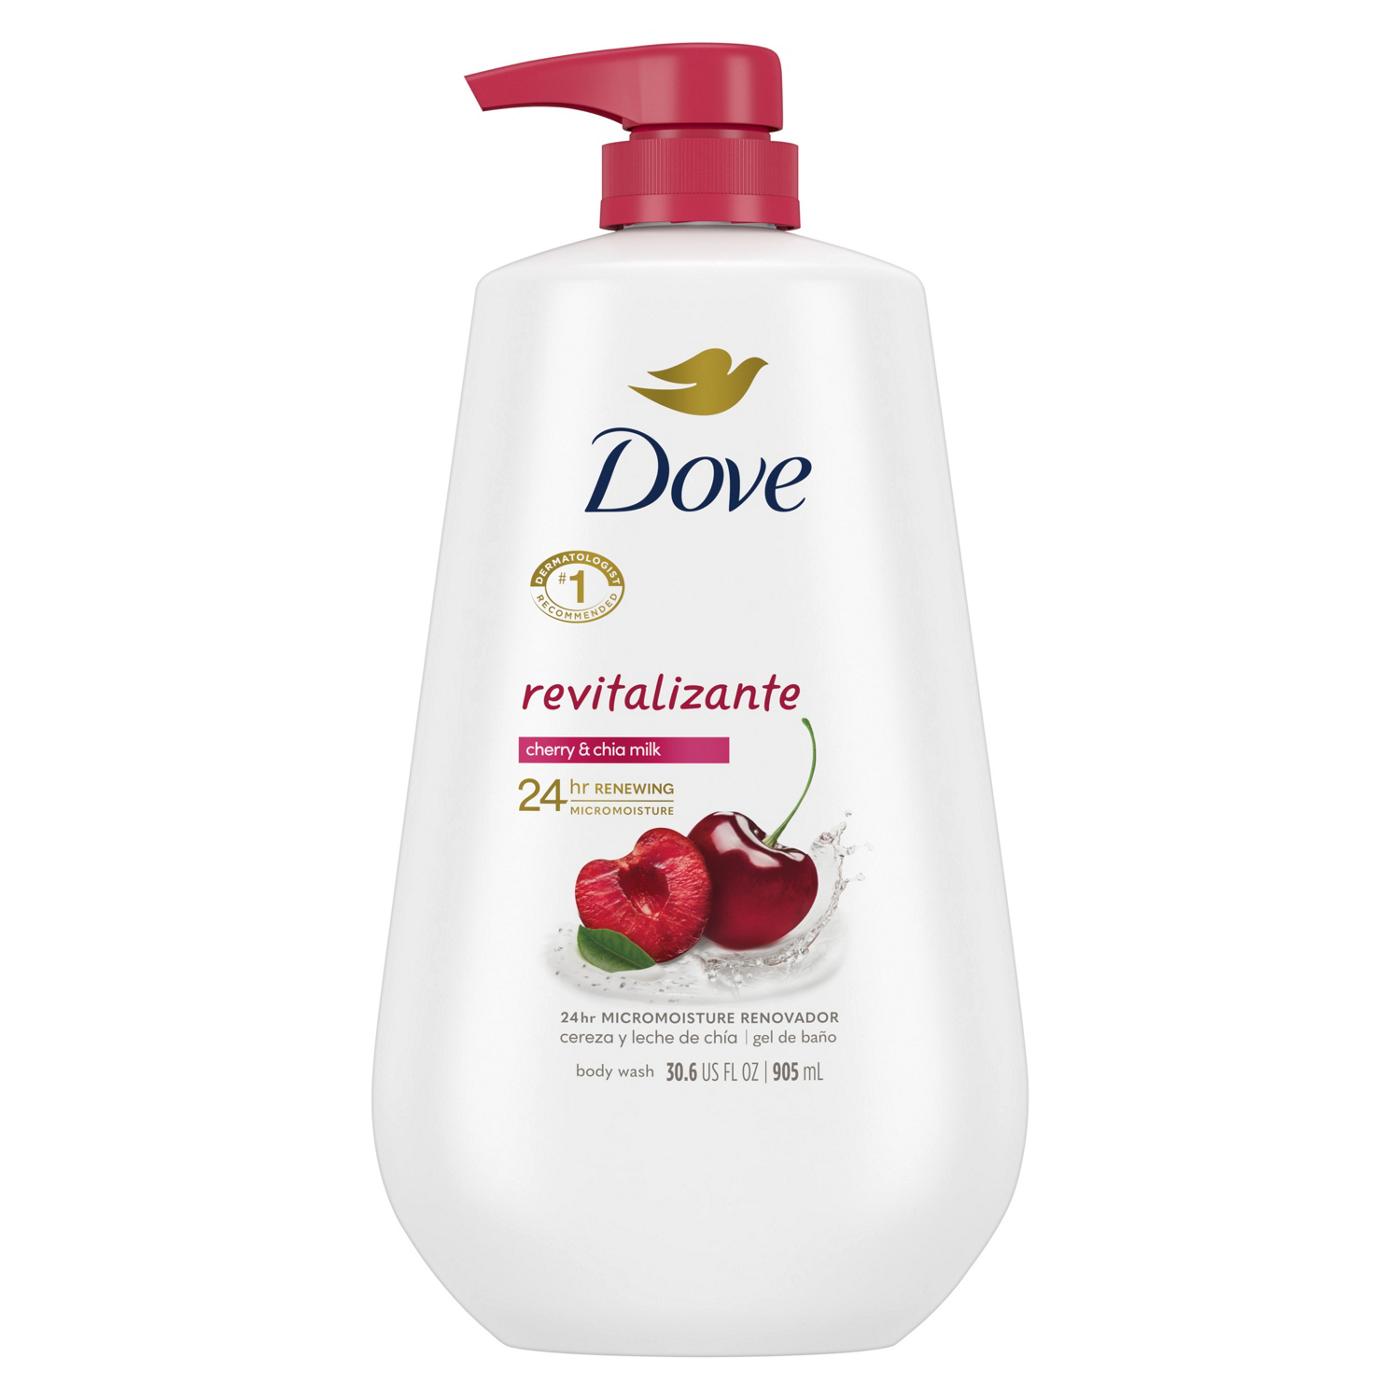 Dove Revitalizante Body Wash - Cherry & Chia Milk; image 1 of 3